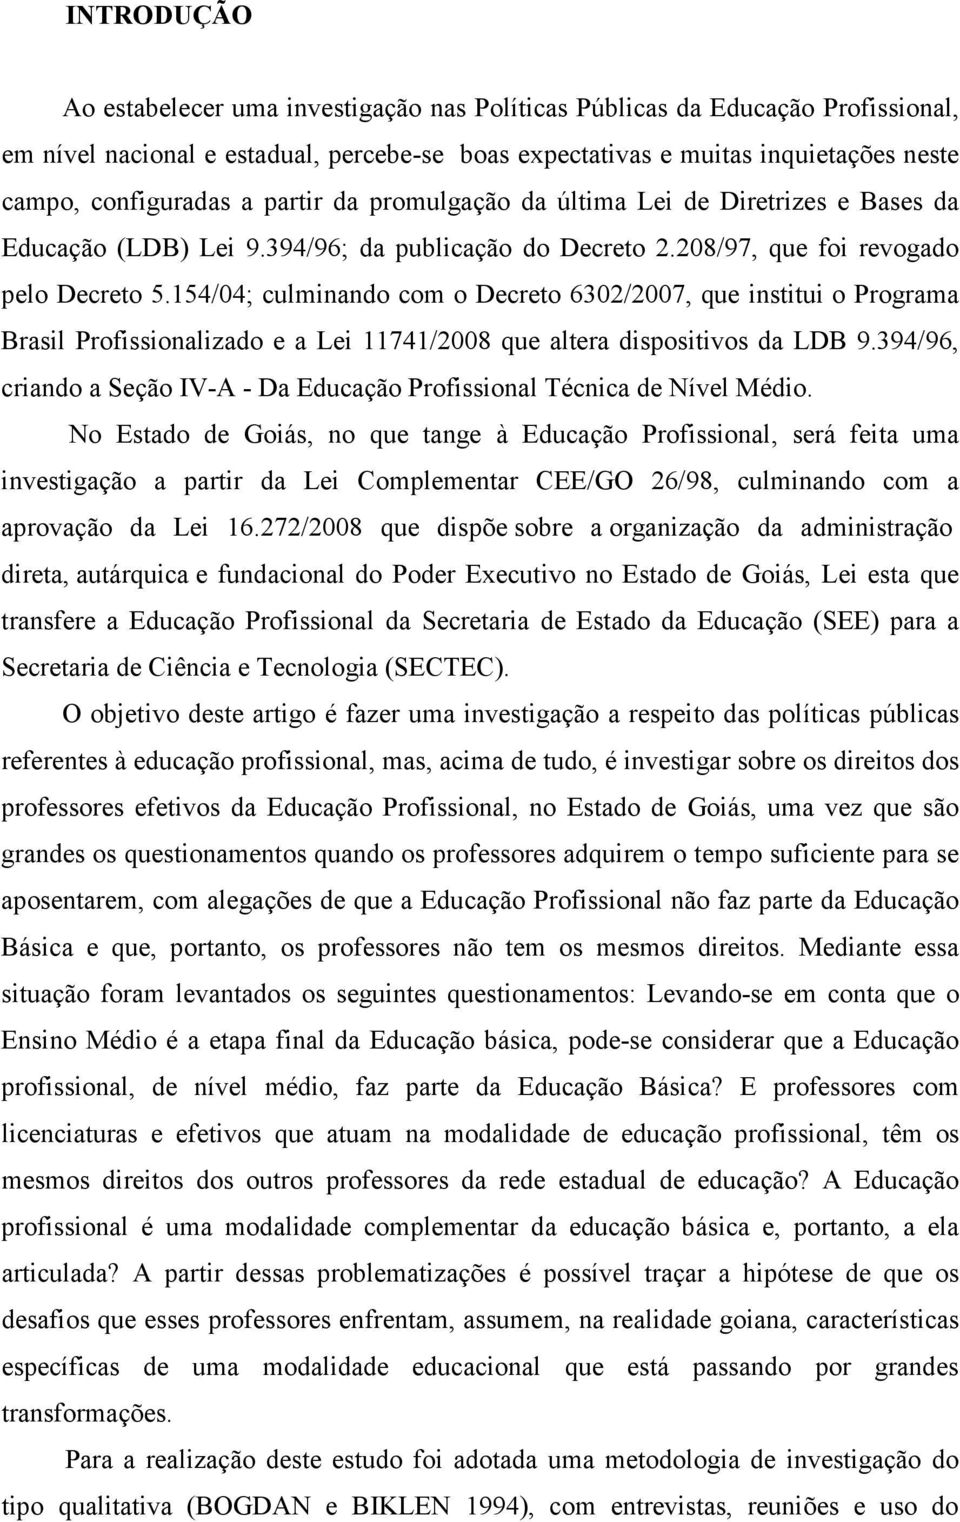 154/04; culminando com o Decreto 6302/2007, que institui o Programa Brasil Profissionalizado e a Lei 11741/2008 que altera dispositivos da LDB 9.